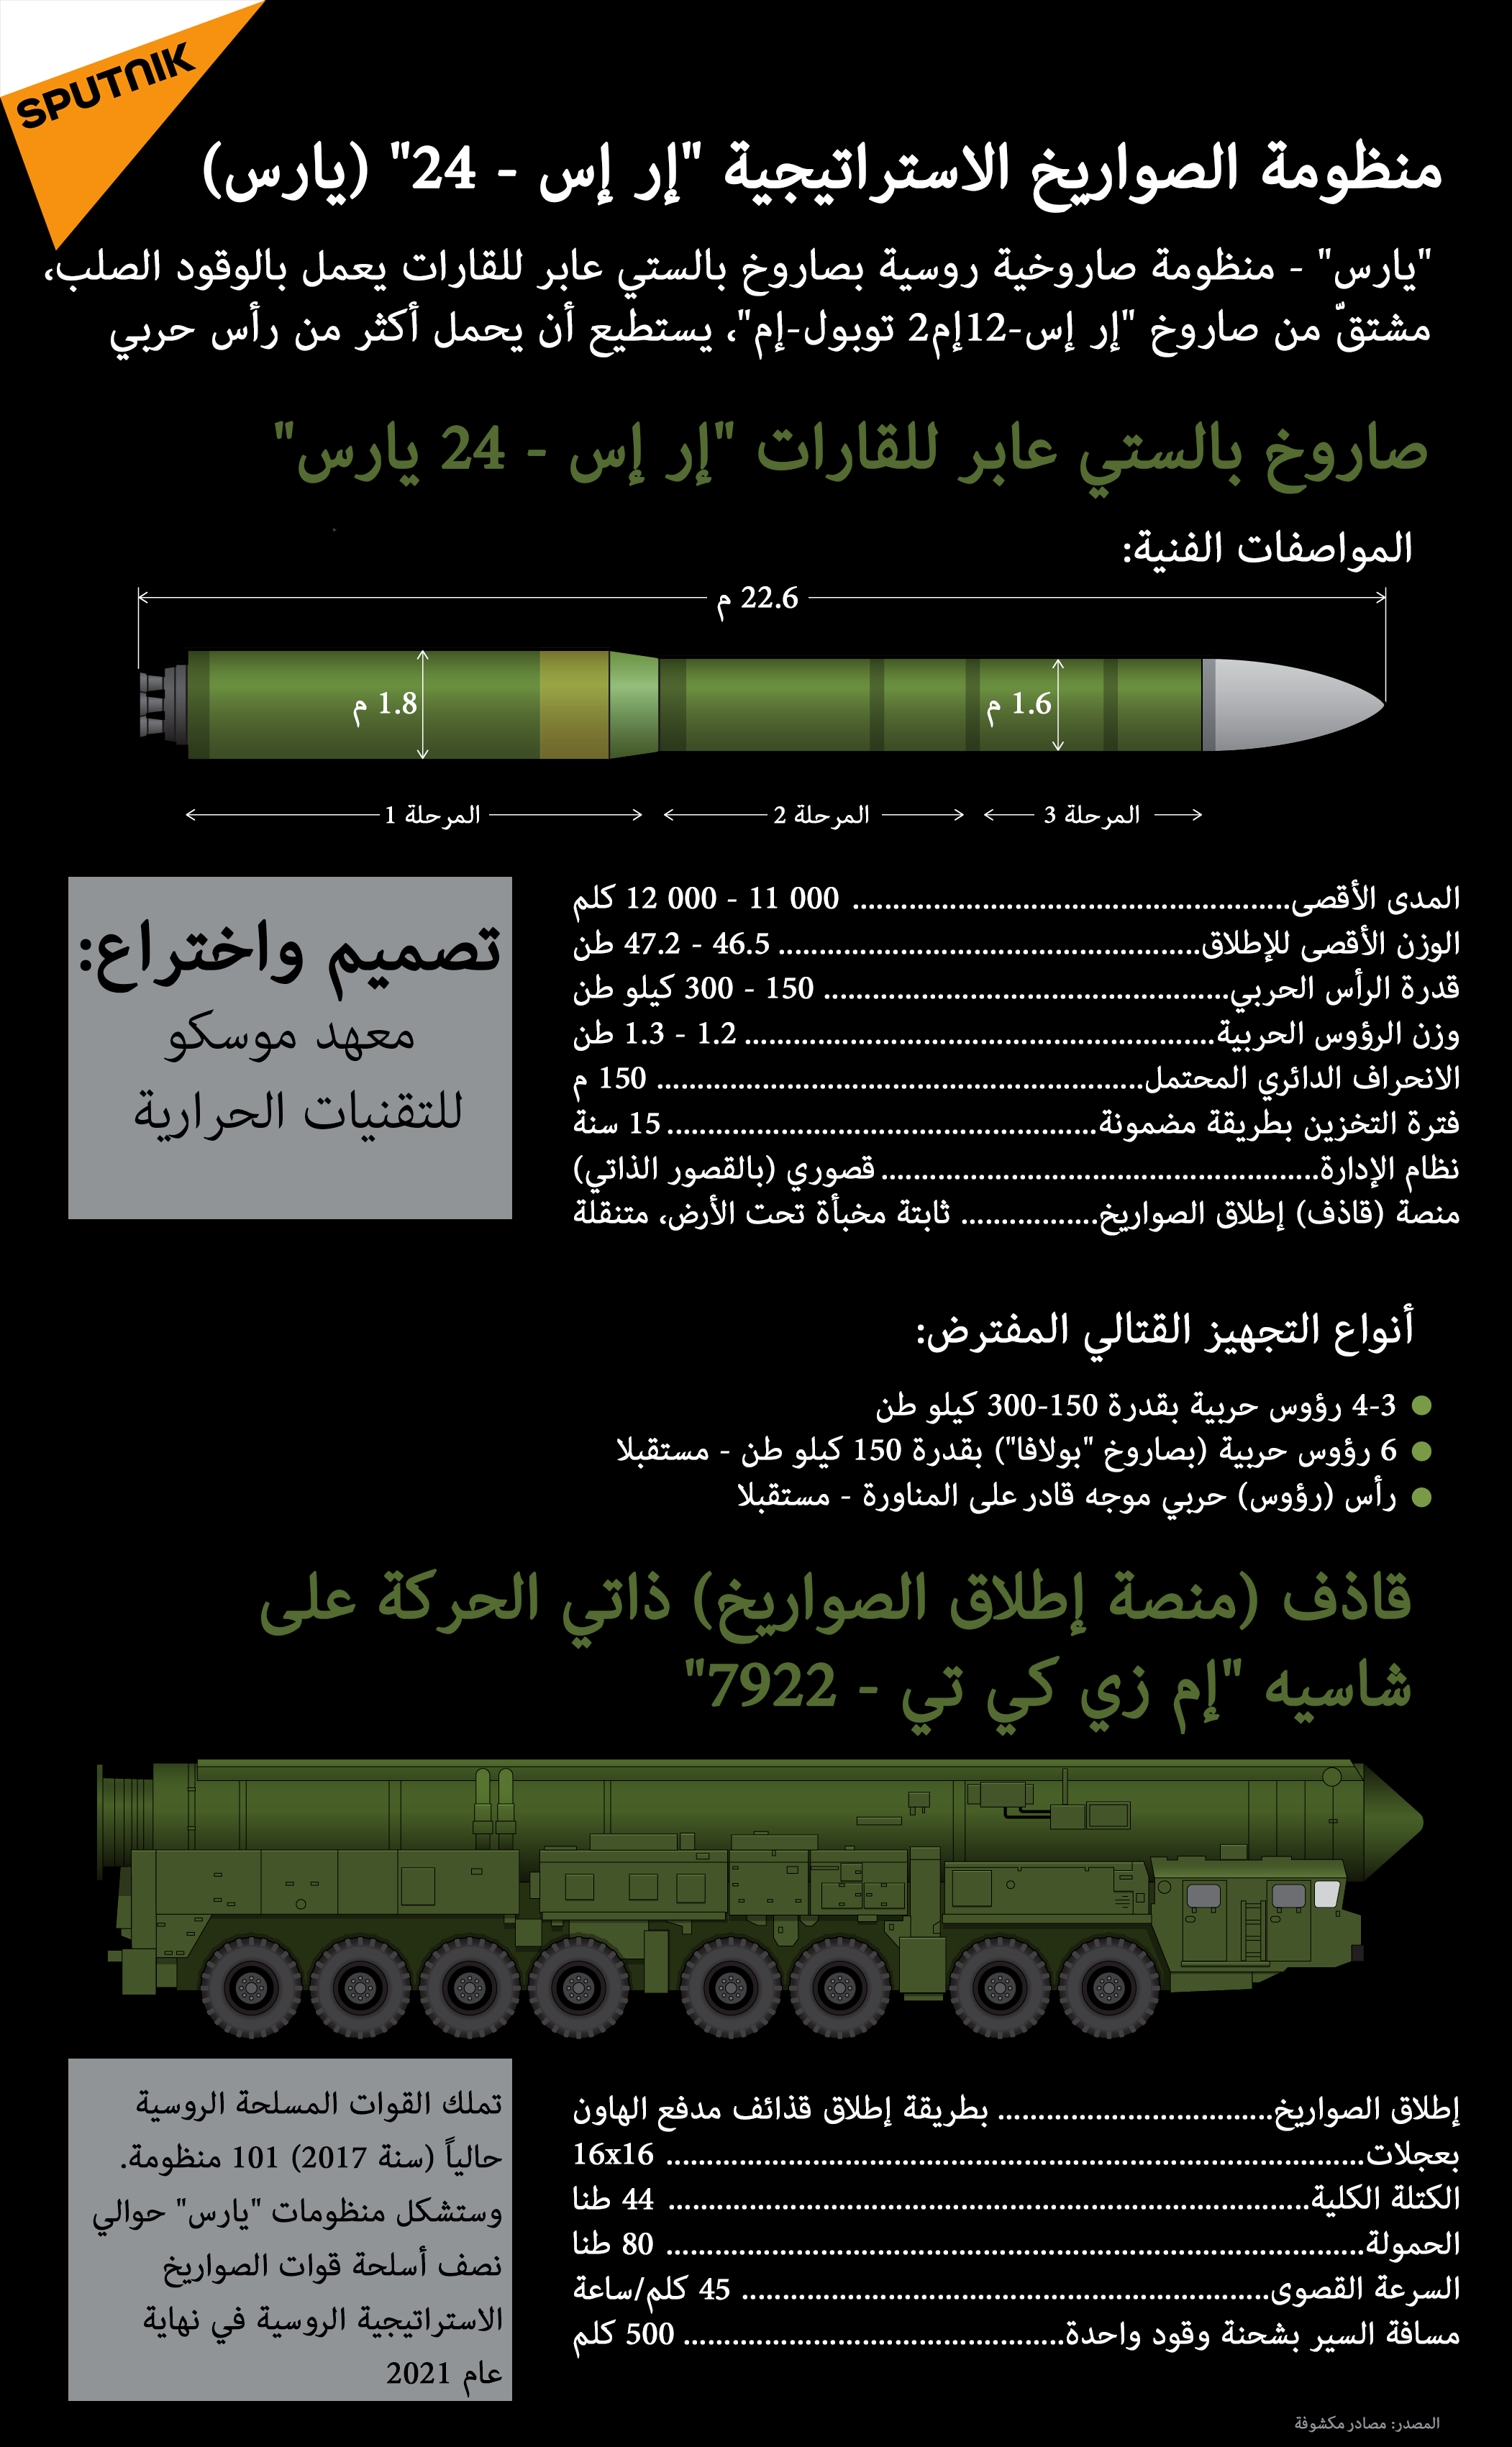 منظومة الصواريخ الاستراتيجية إر إس-24 يارس - سبوتنيك عربي